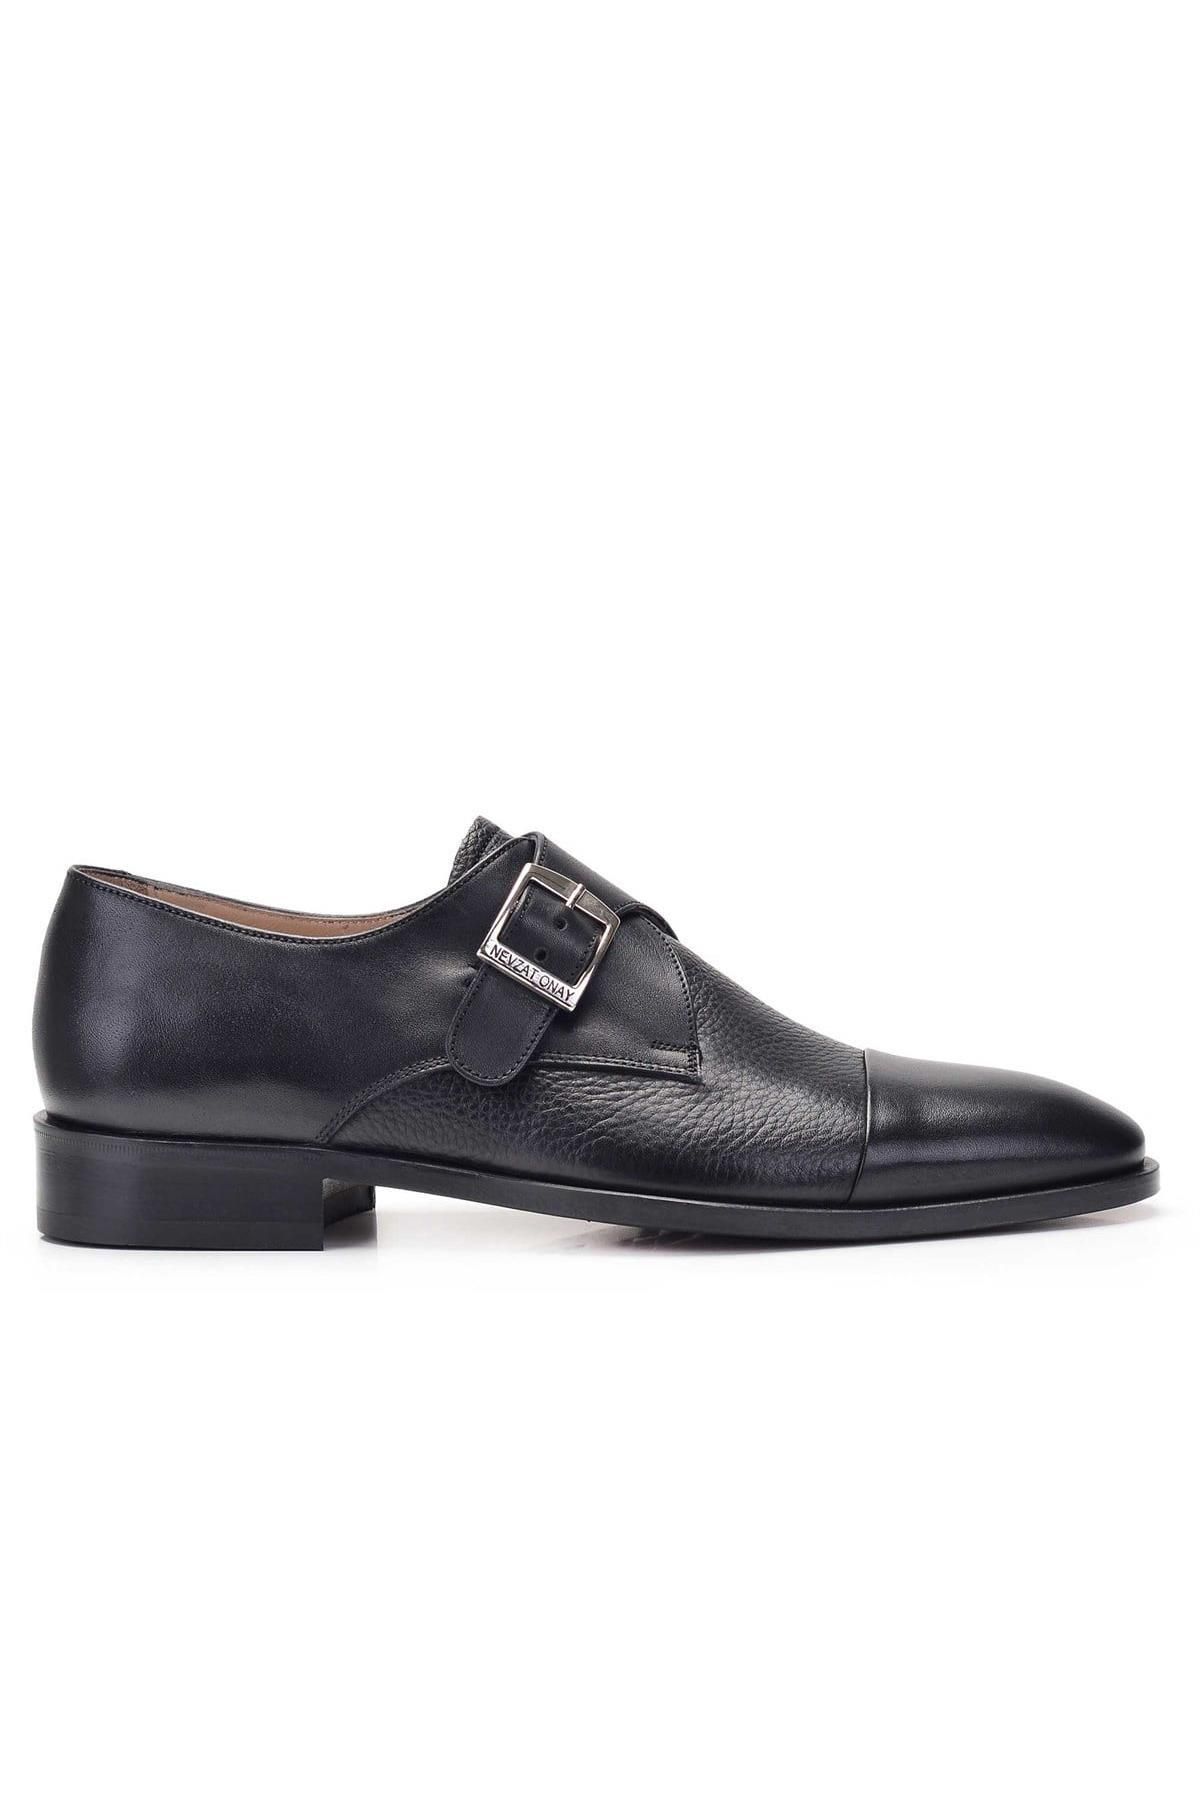 Nevzat Onay 0113-147 Erkek Klasik Ayakkabı - Siyah